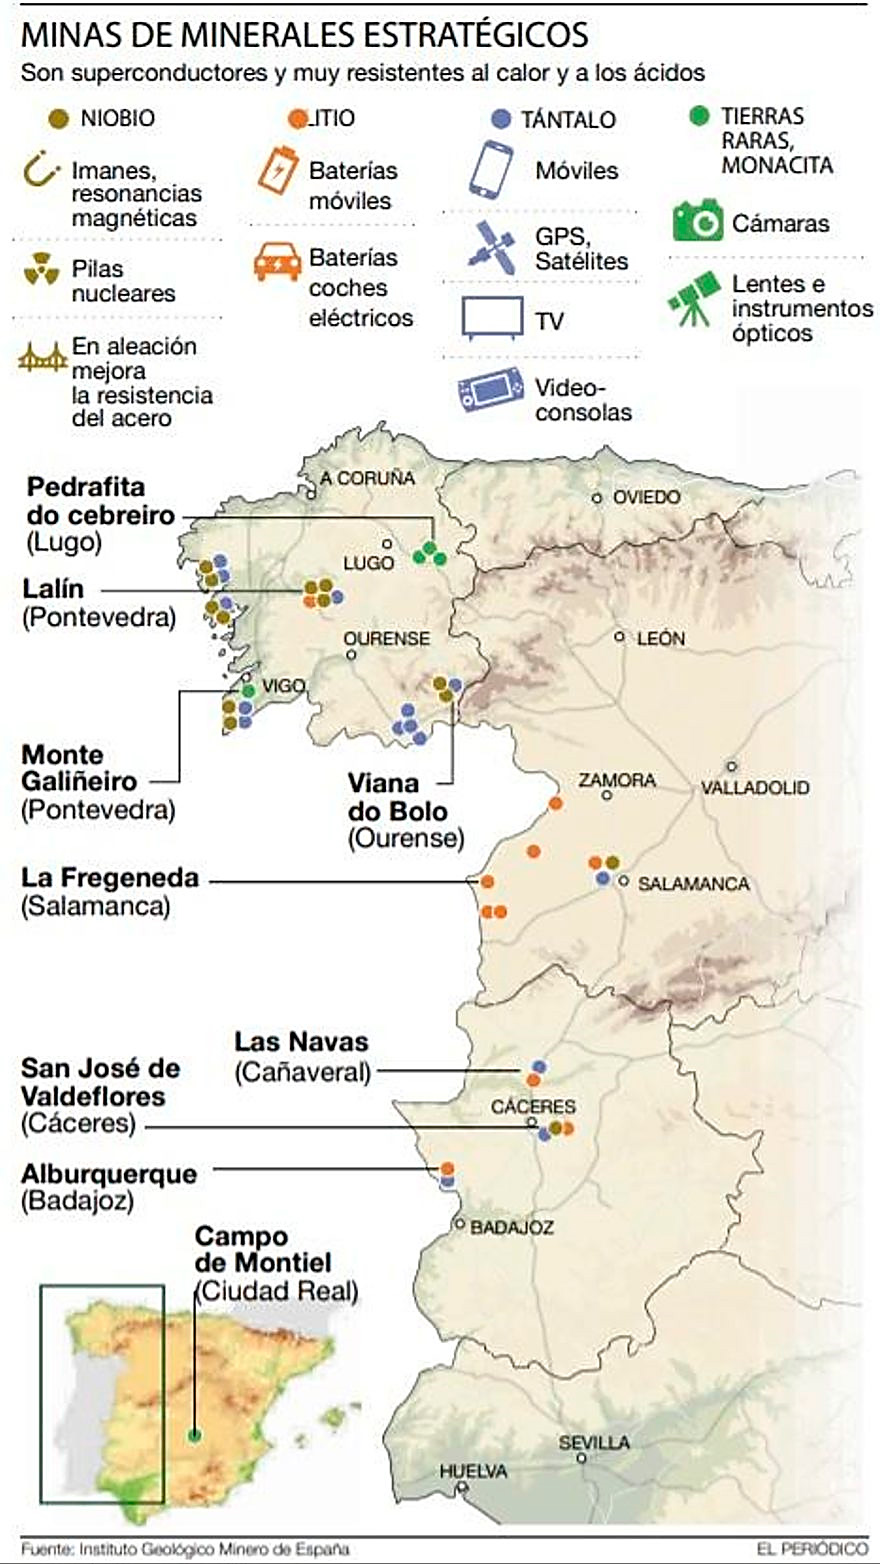 Mapa oeste de España con minerales estratégicos